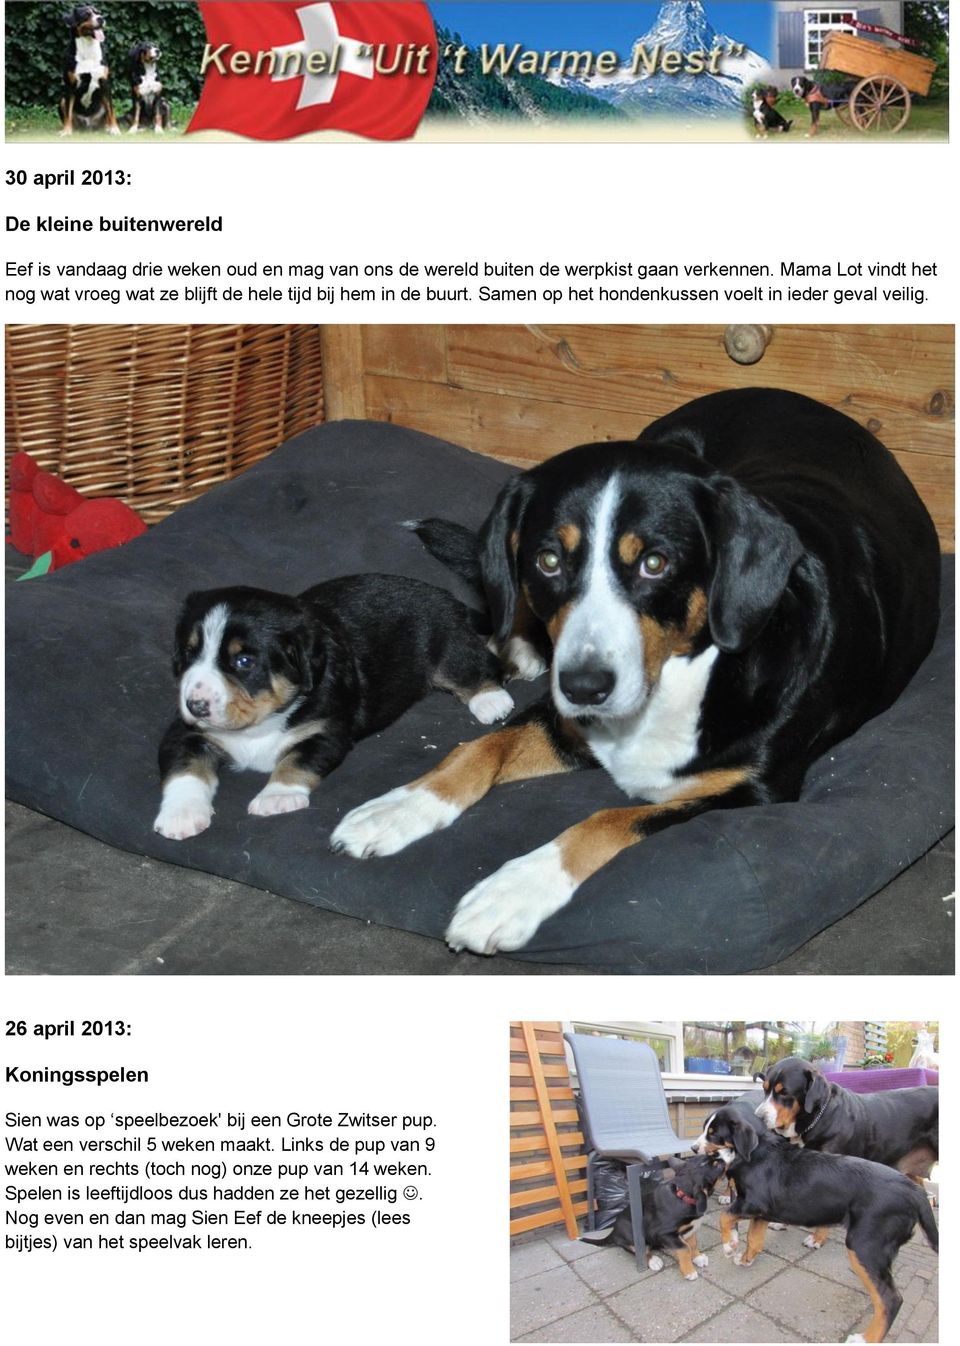 26 april 2013: Koningsspelen Sien was op speelbezoek' bij een Grote Zwitser pup. Wat een verschil 5 weken maakt.